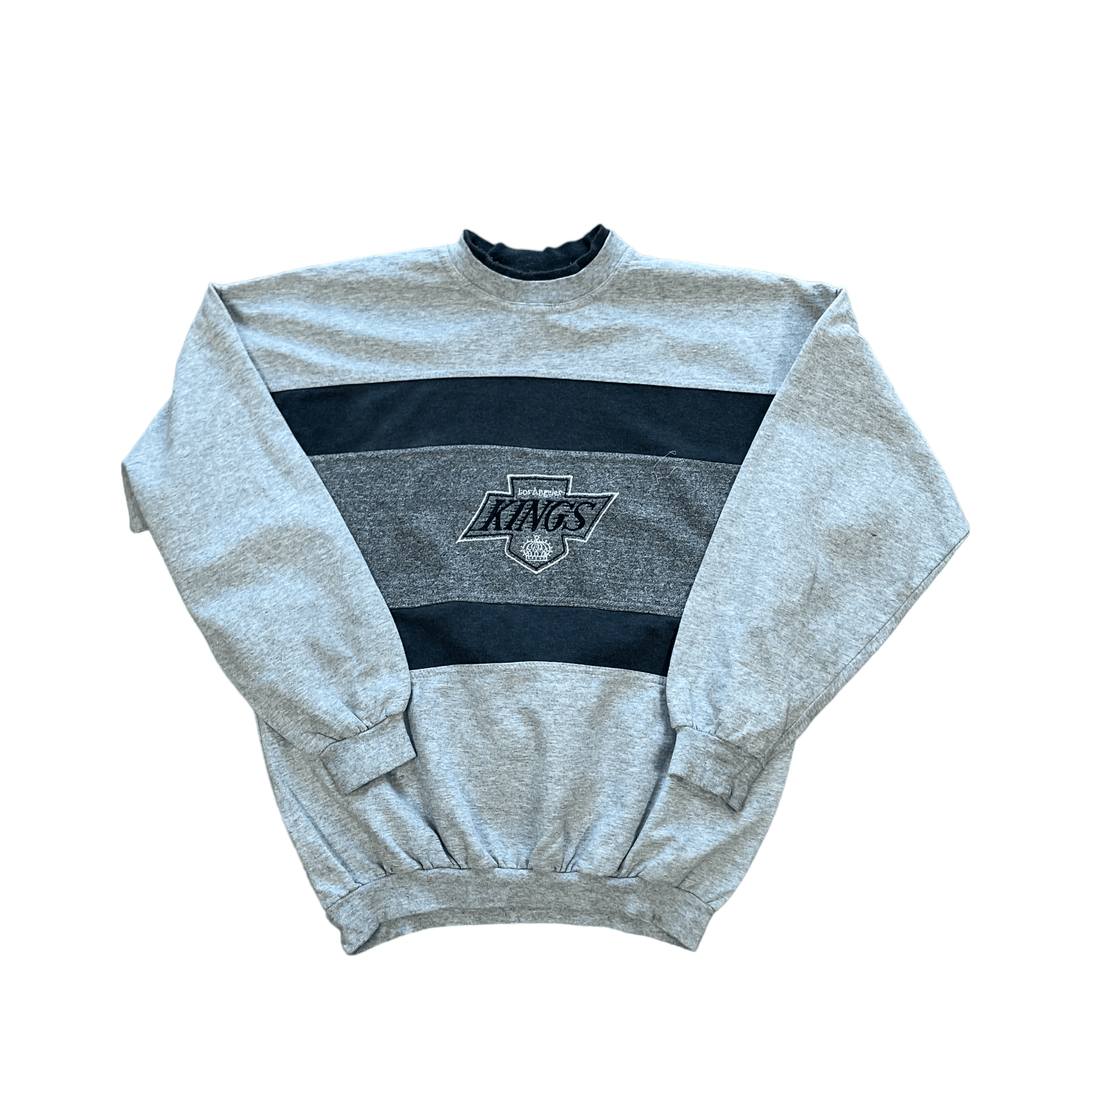 Vintage 90s Grey Los Angeles Kings Sweatshirt - Small - The Streetwear Studio